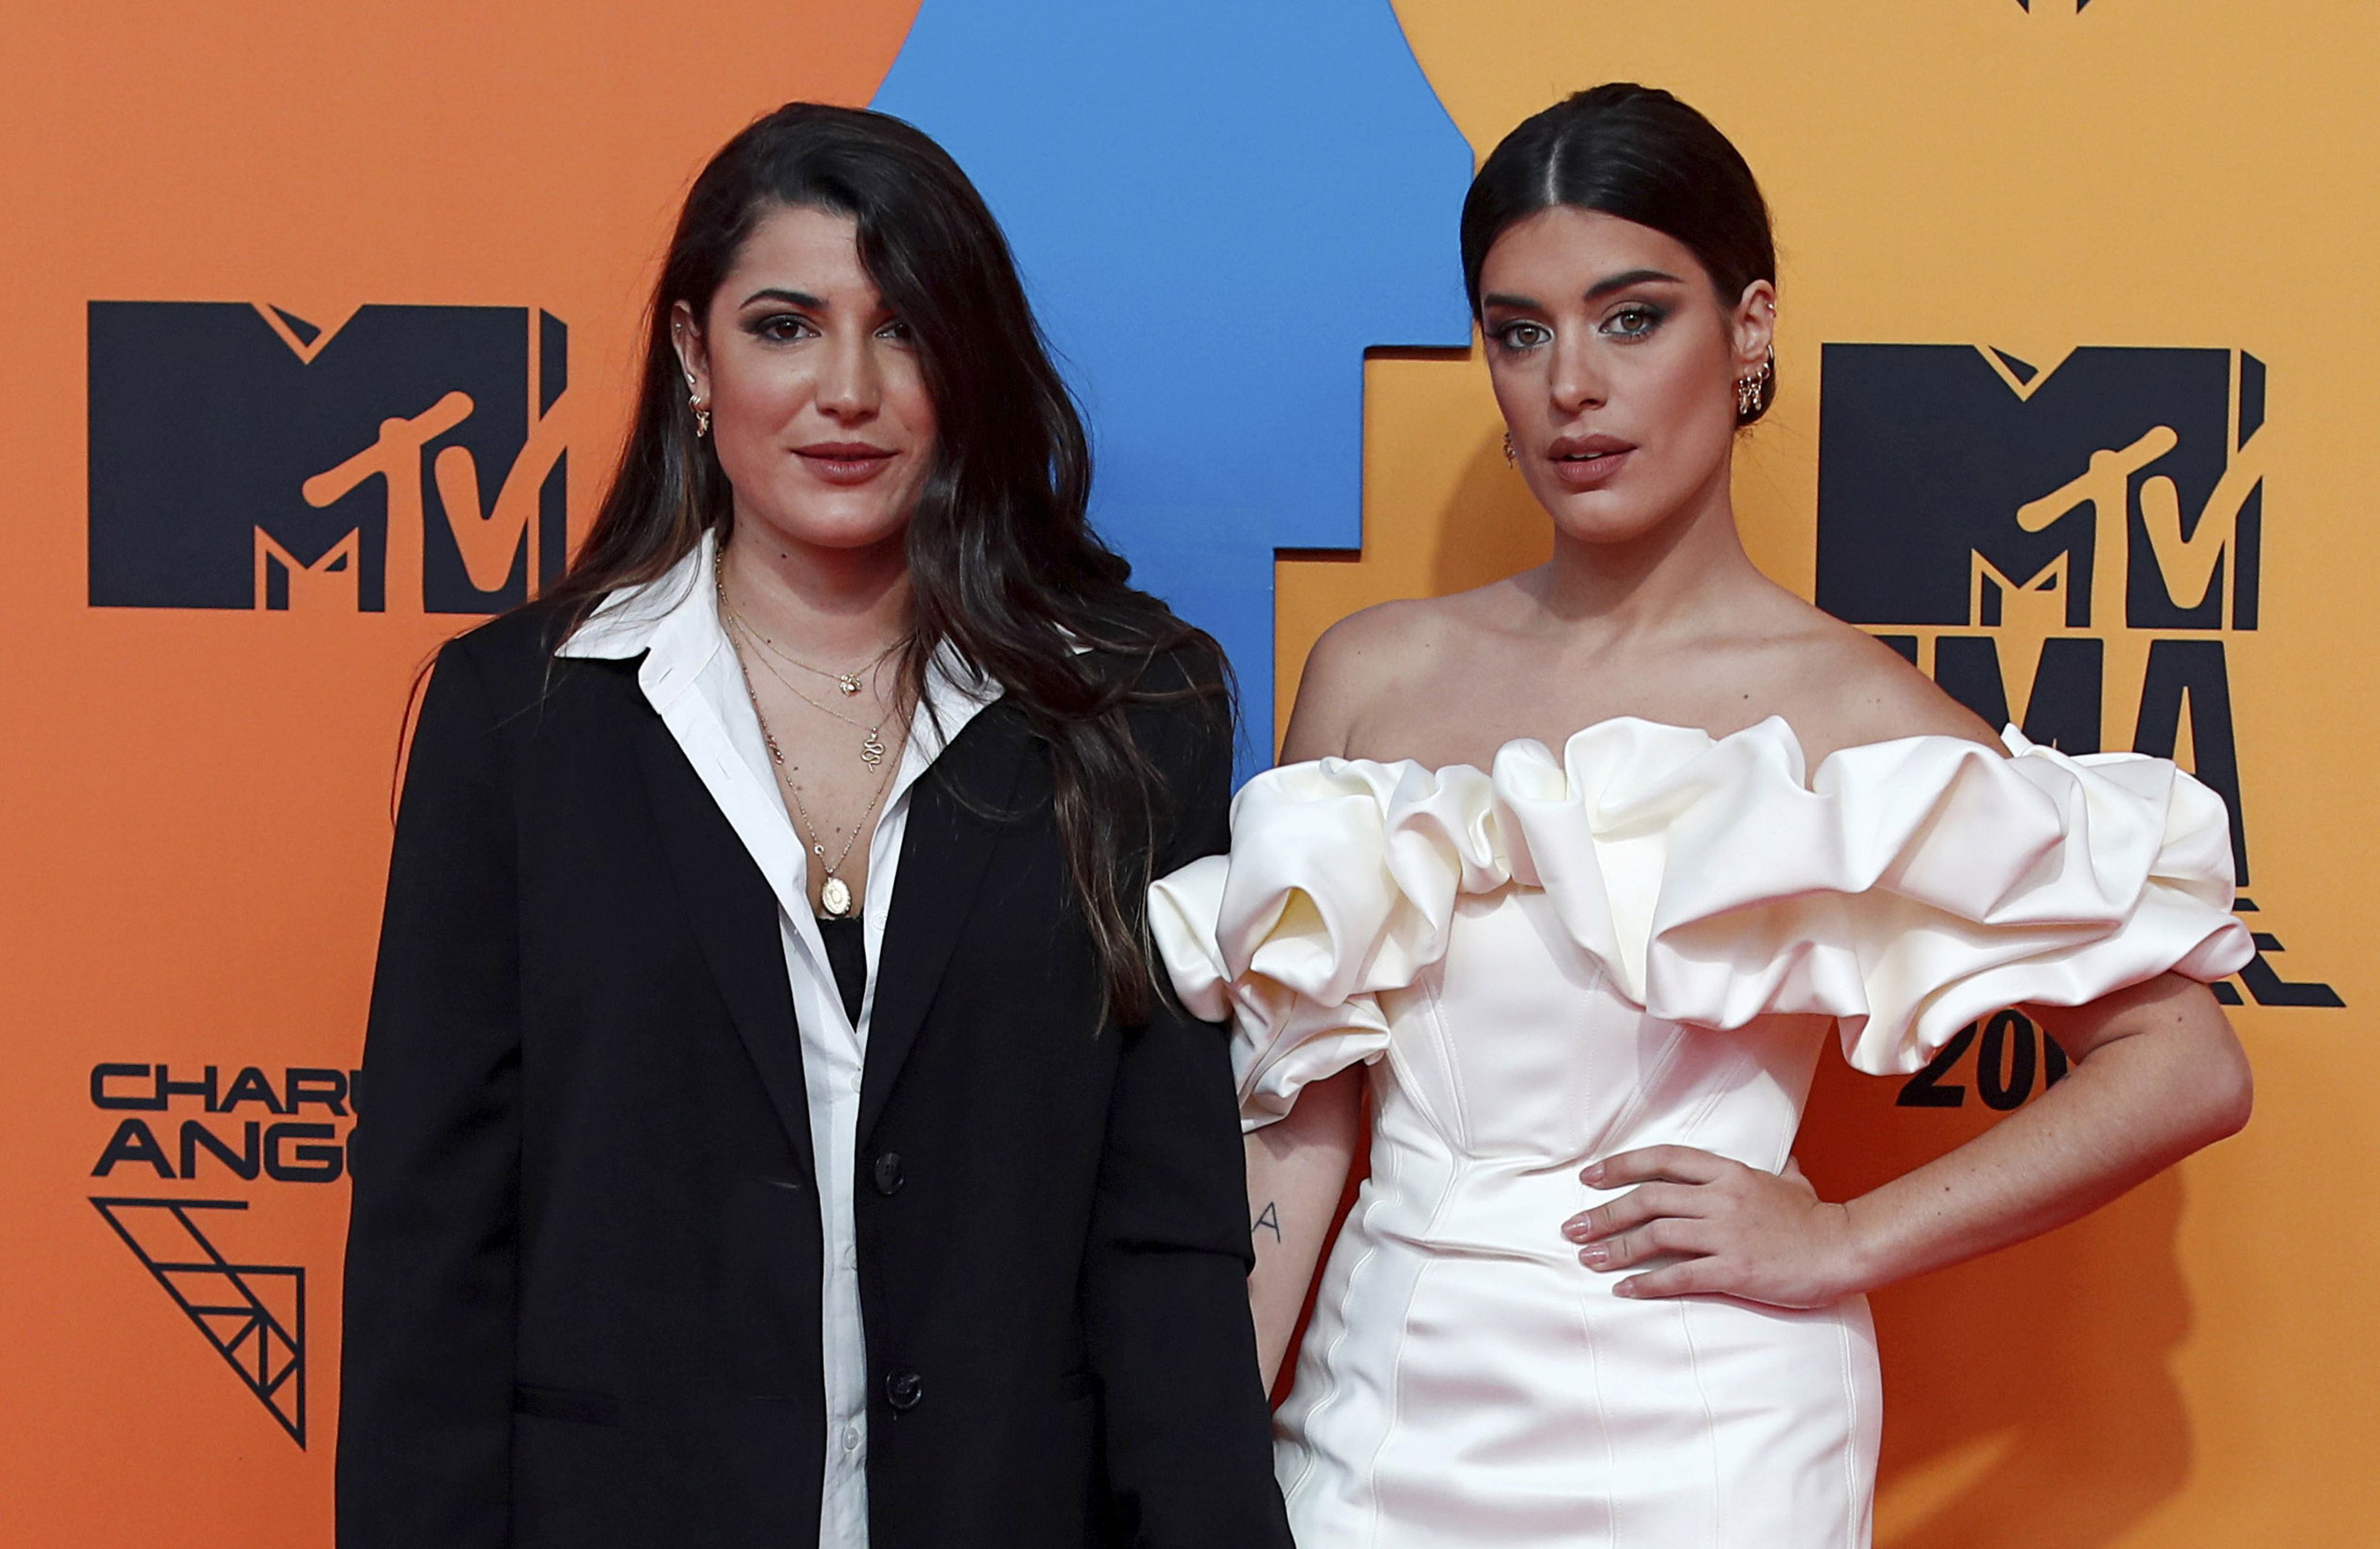 Dulceida y su pareja Alba Paul, dos de las influencers más famosas de España posando en la alfombra roja de los MTV Europe Music Awards 2019